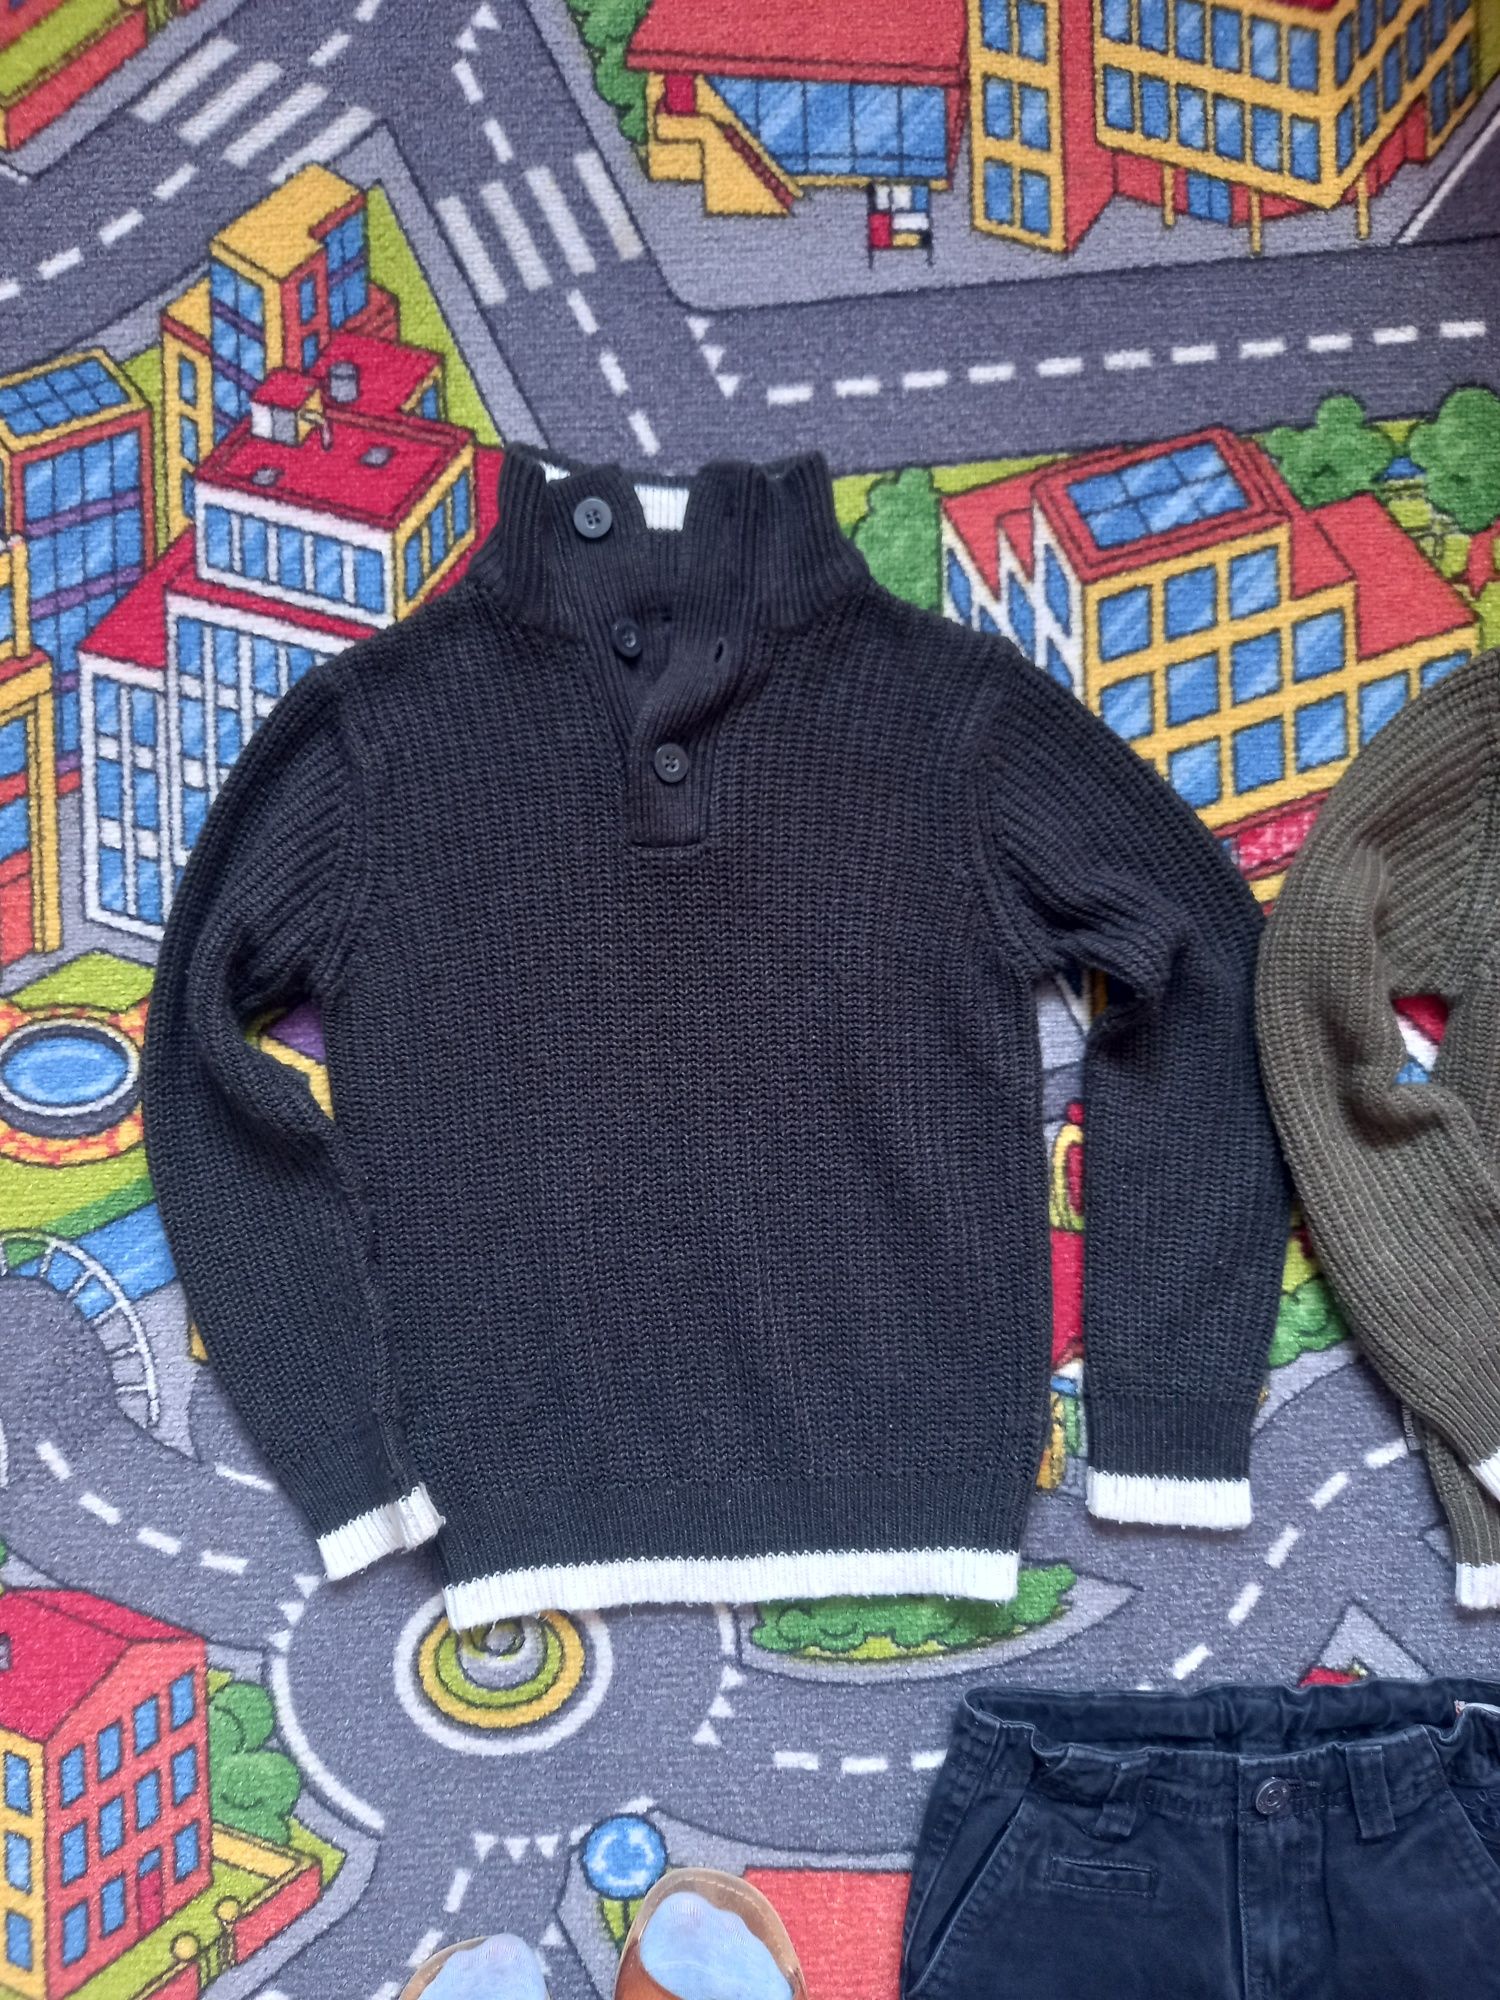 R 116 swetry 2 szt TRN BOY + spodnie czarne